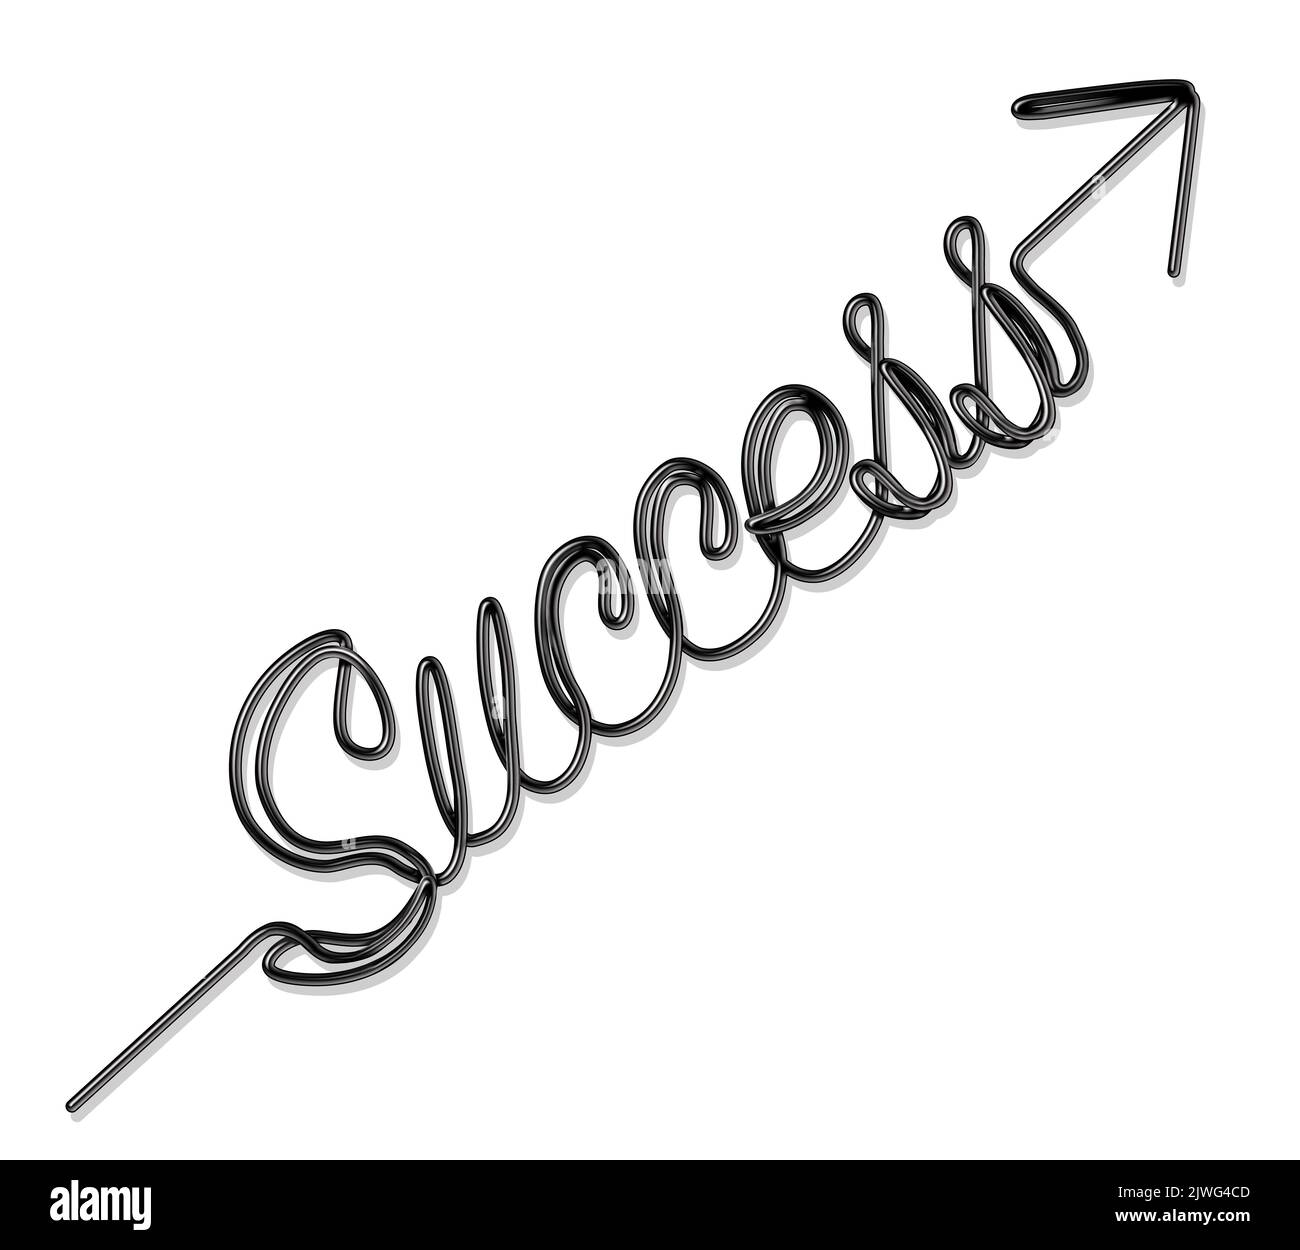 Erfolg Metapher und erfolgreich im Geschäft und ein Gewinner im Lebenskonzept als eine Schnur oder Seil geformt als Text und ein Pfeil sein. Stockfoto